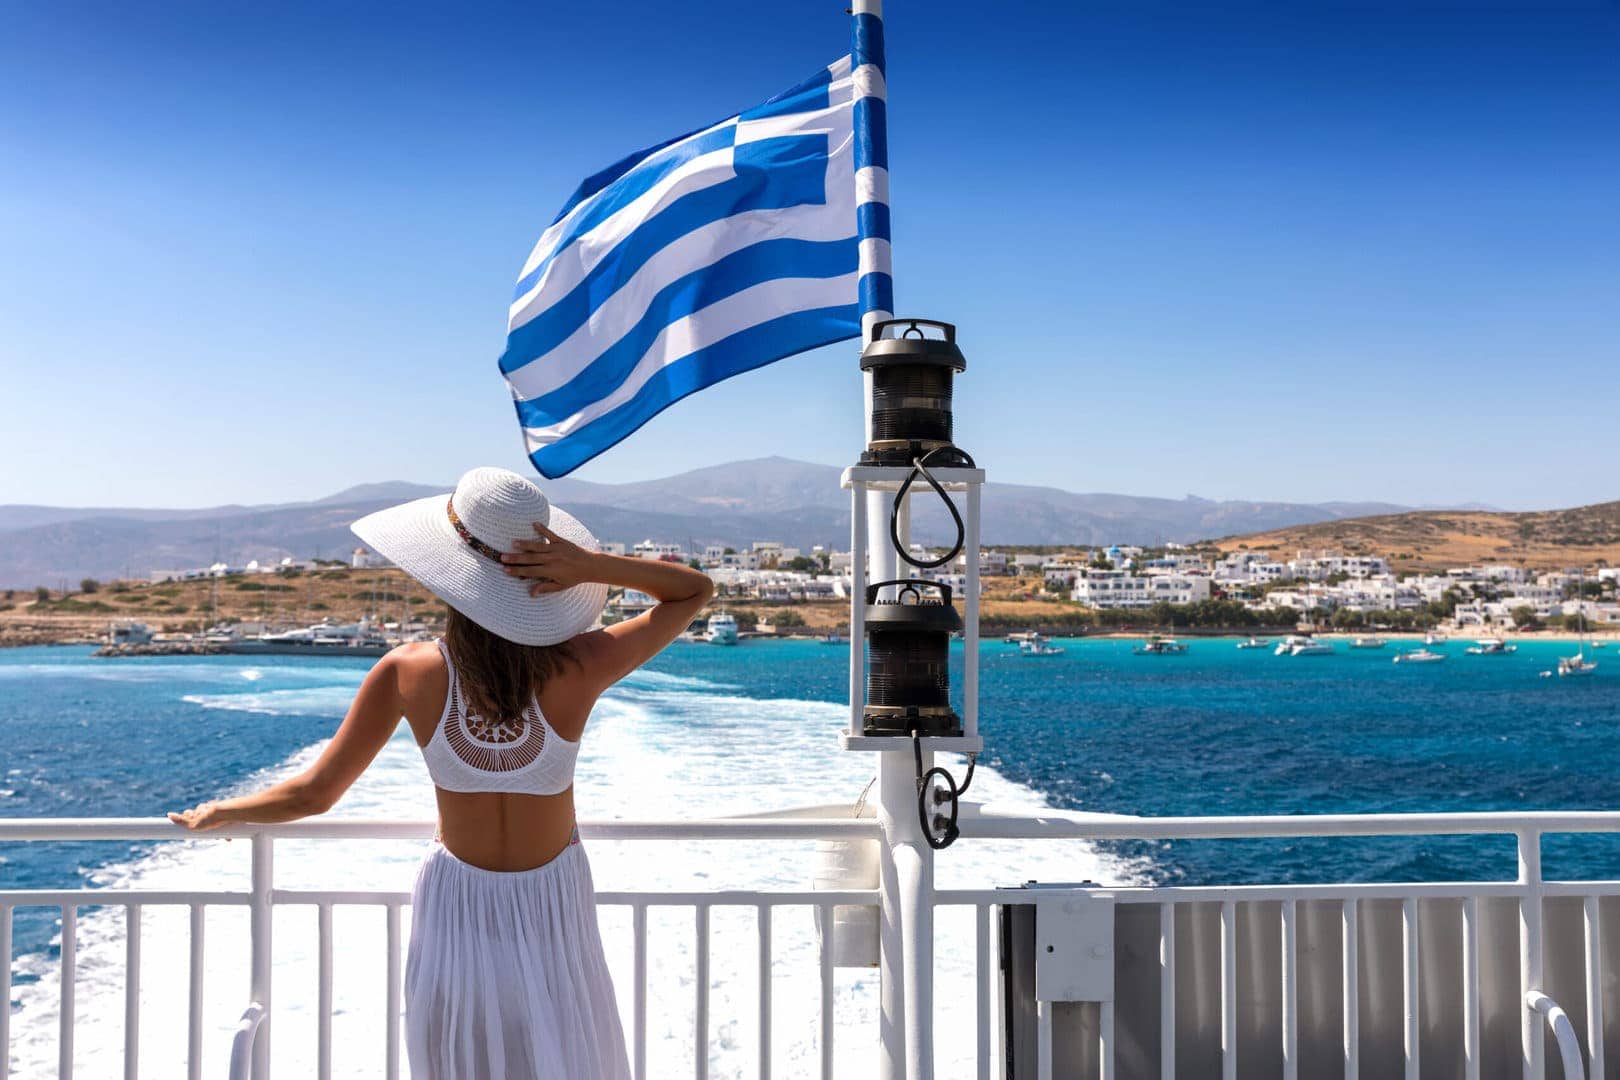 Prom Kefalonia-Zakynthos, grecka flaga powiewająca na wietrze, podczas przeprawy promowej z Kefalonii na Zakynthos, podczas wycieczki lokalnej na wyspie Kefalonia z przewodnikiem